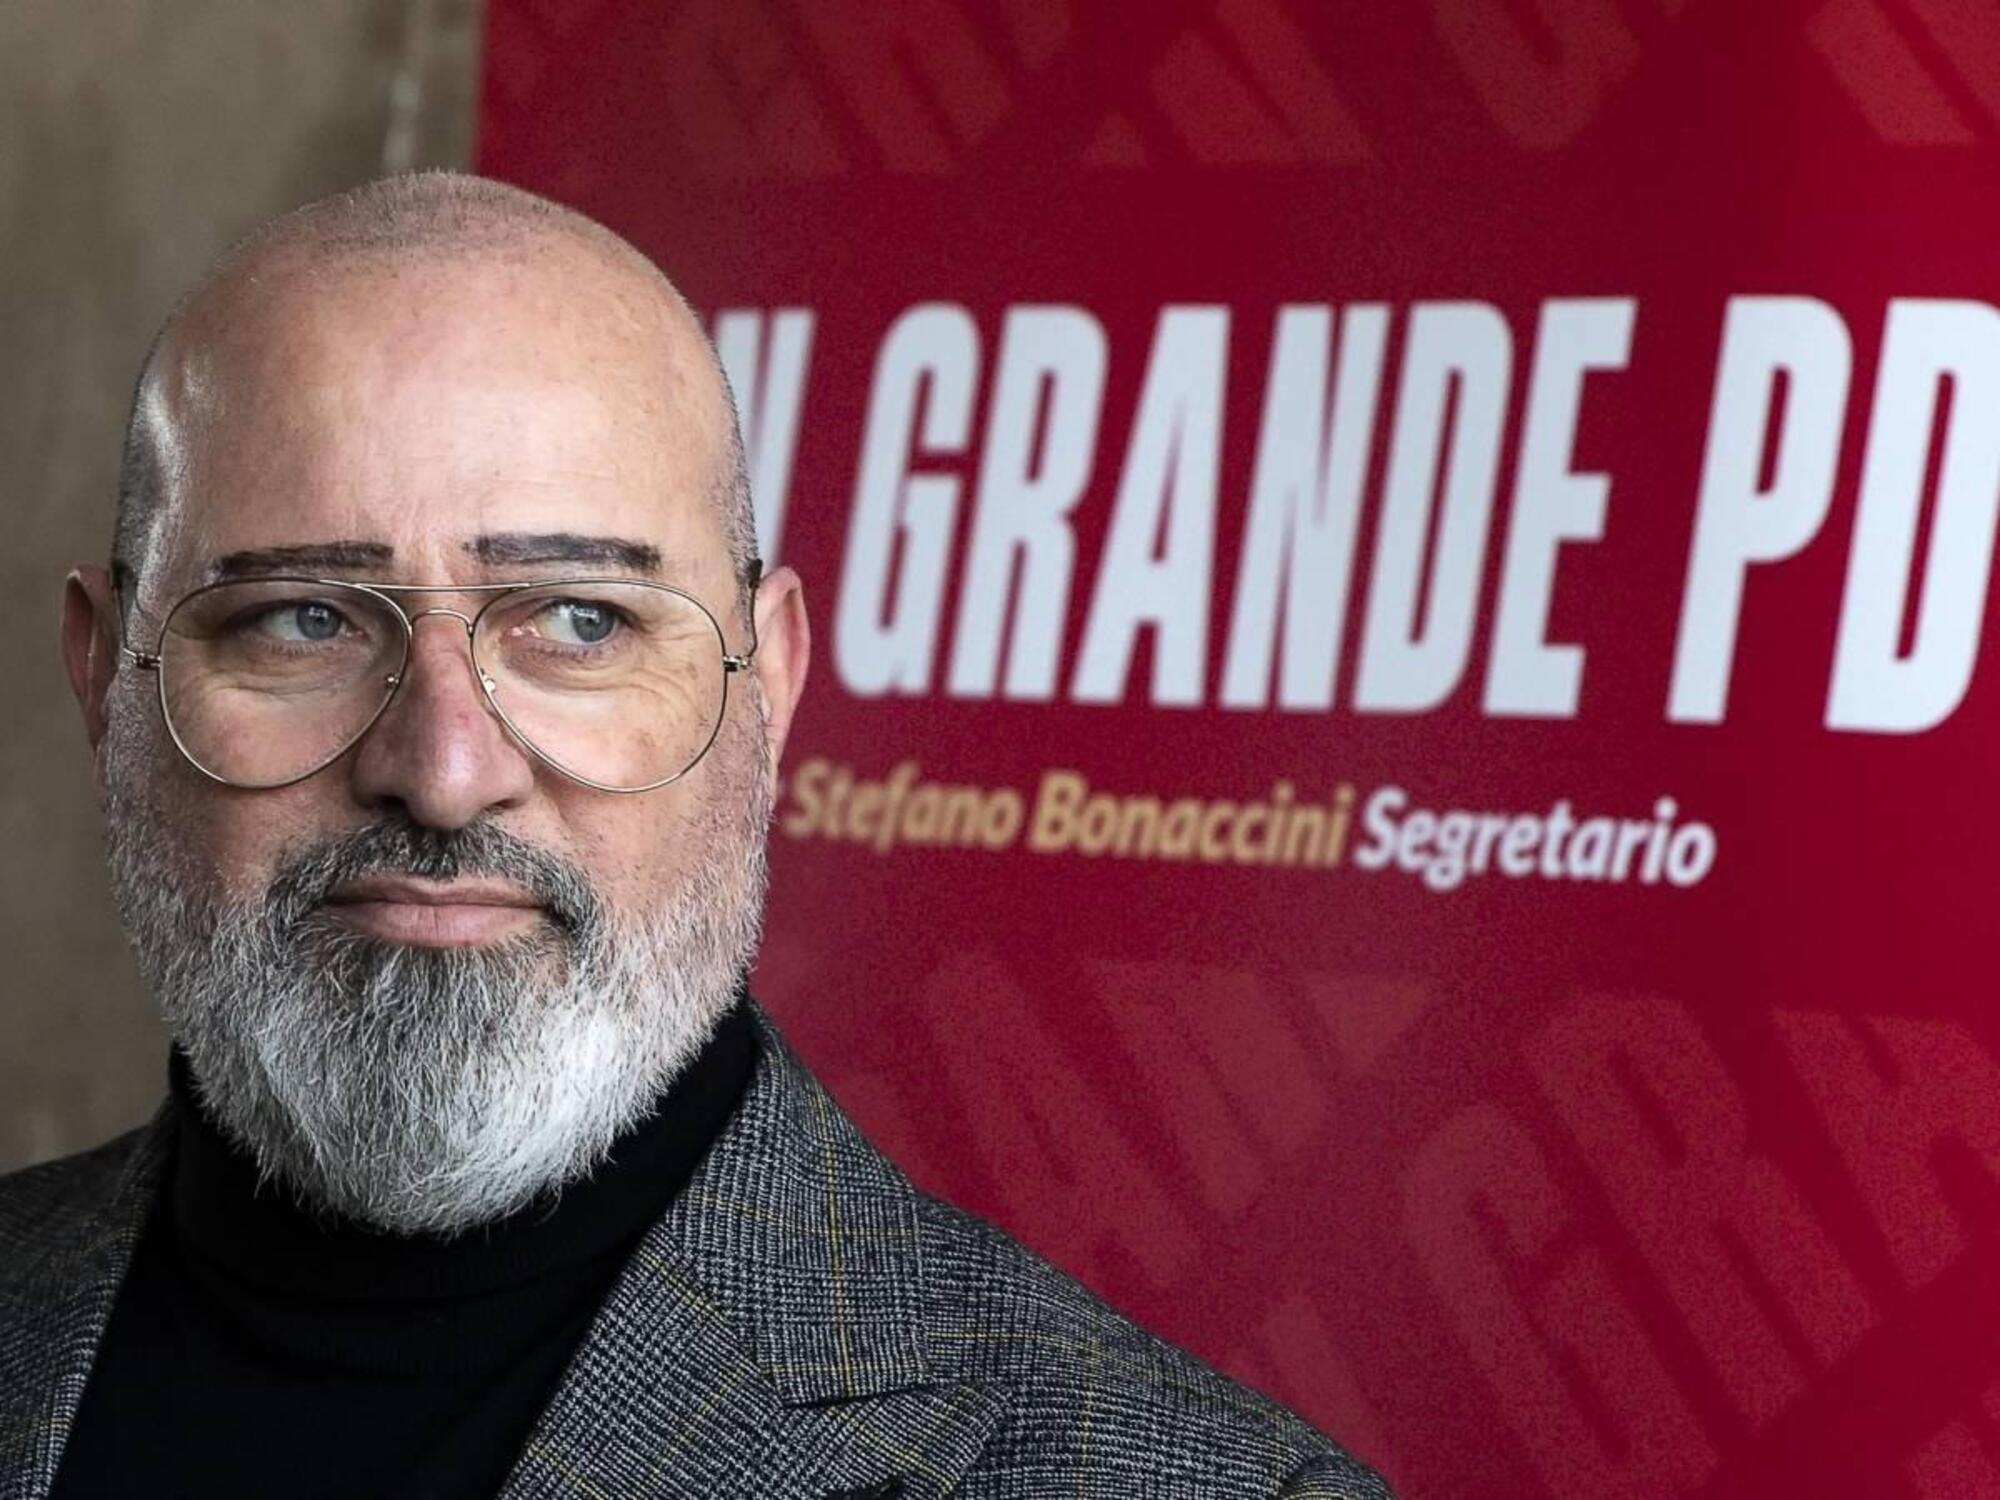 Stefano Bonaccini, candidato segretario del Pd, e le sue (?) sopracciglia